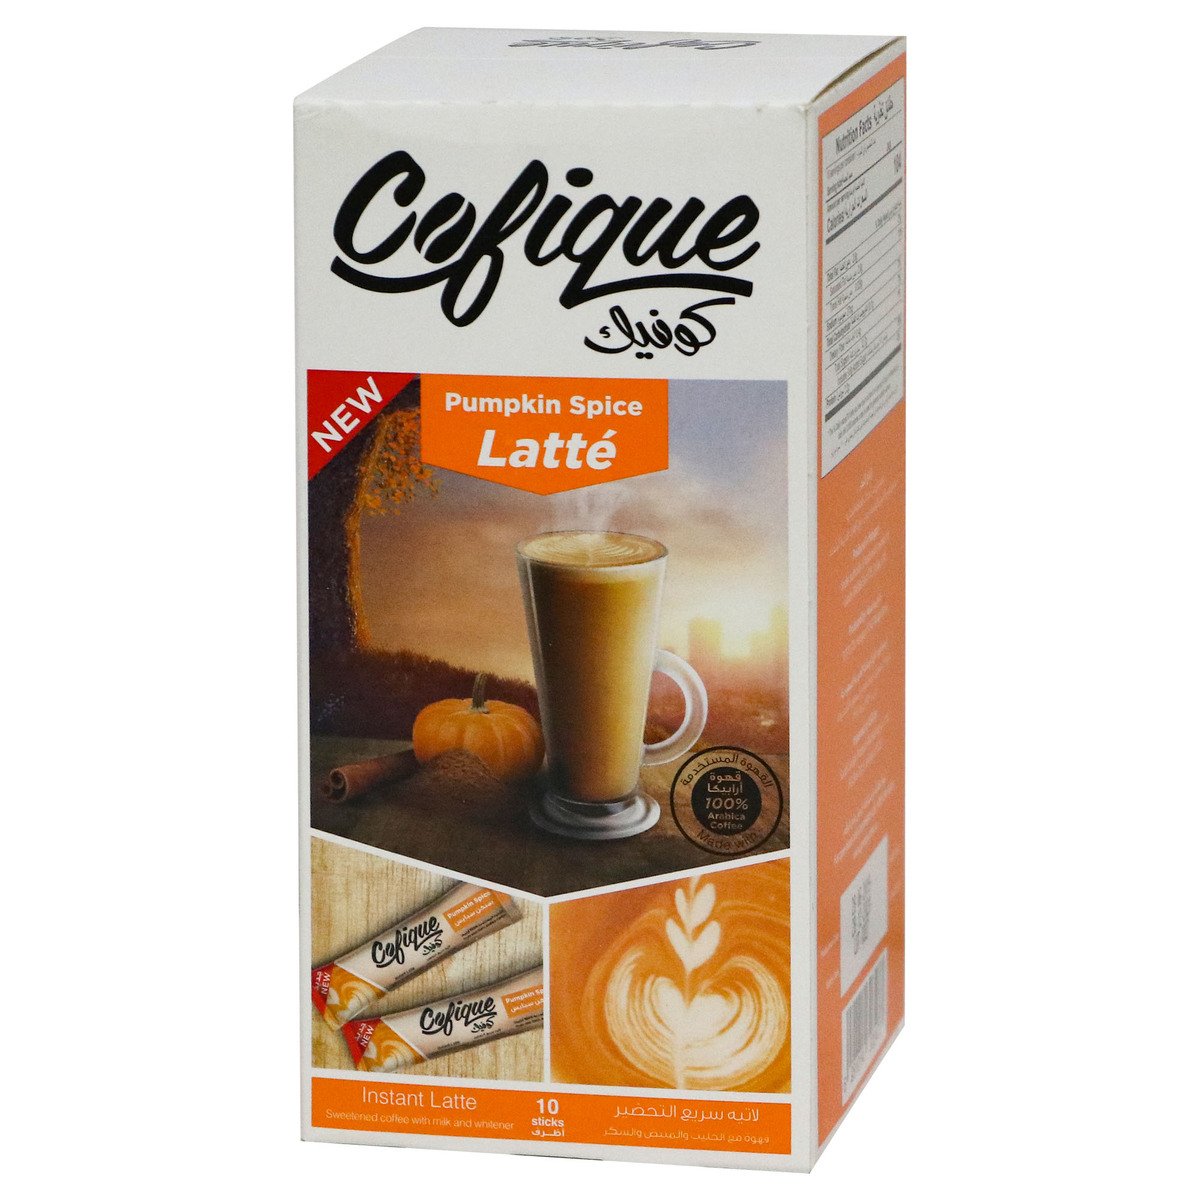 Cofique Instant Latte Coffee Pumpkin Spice 10 x 24g